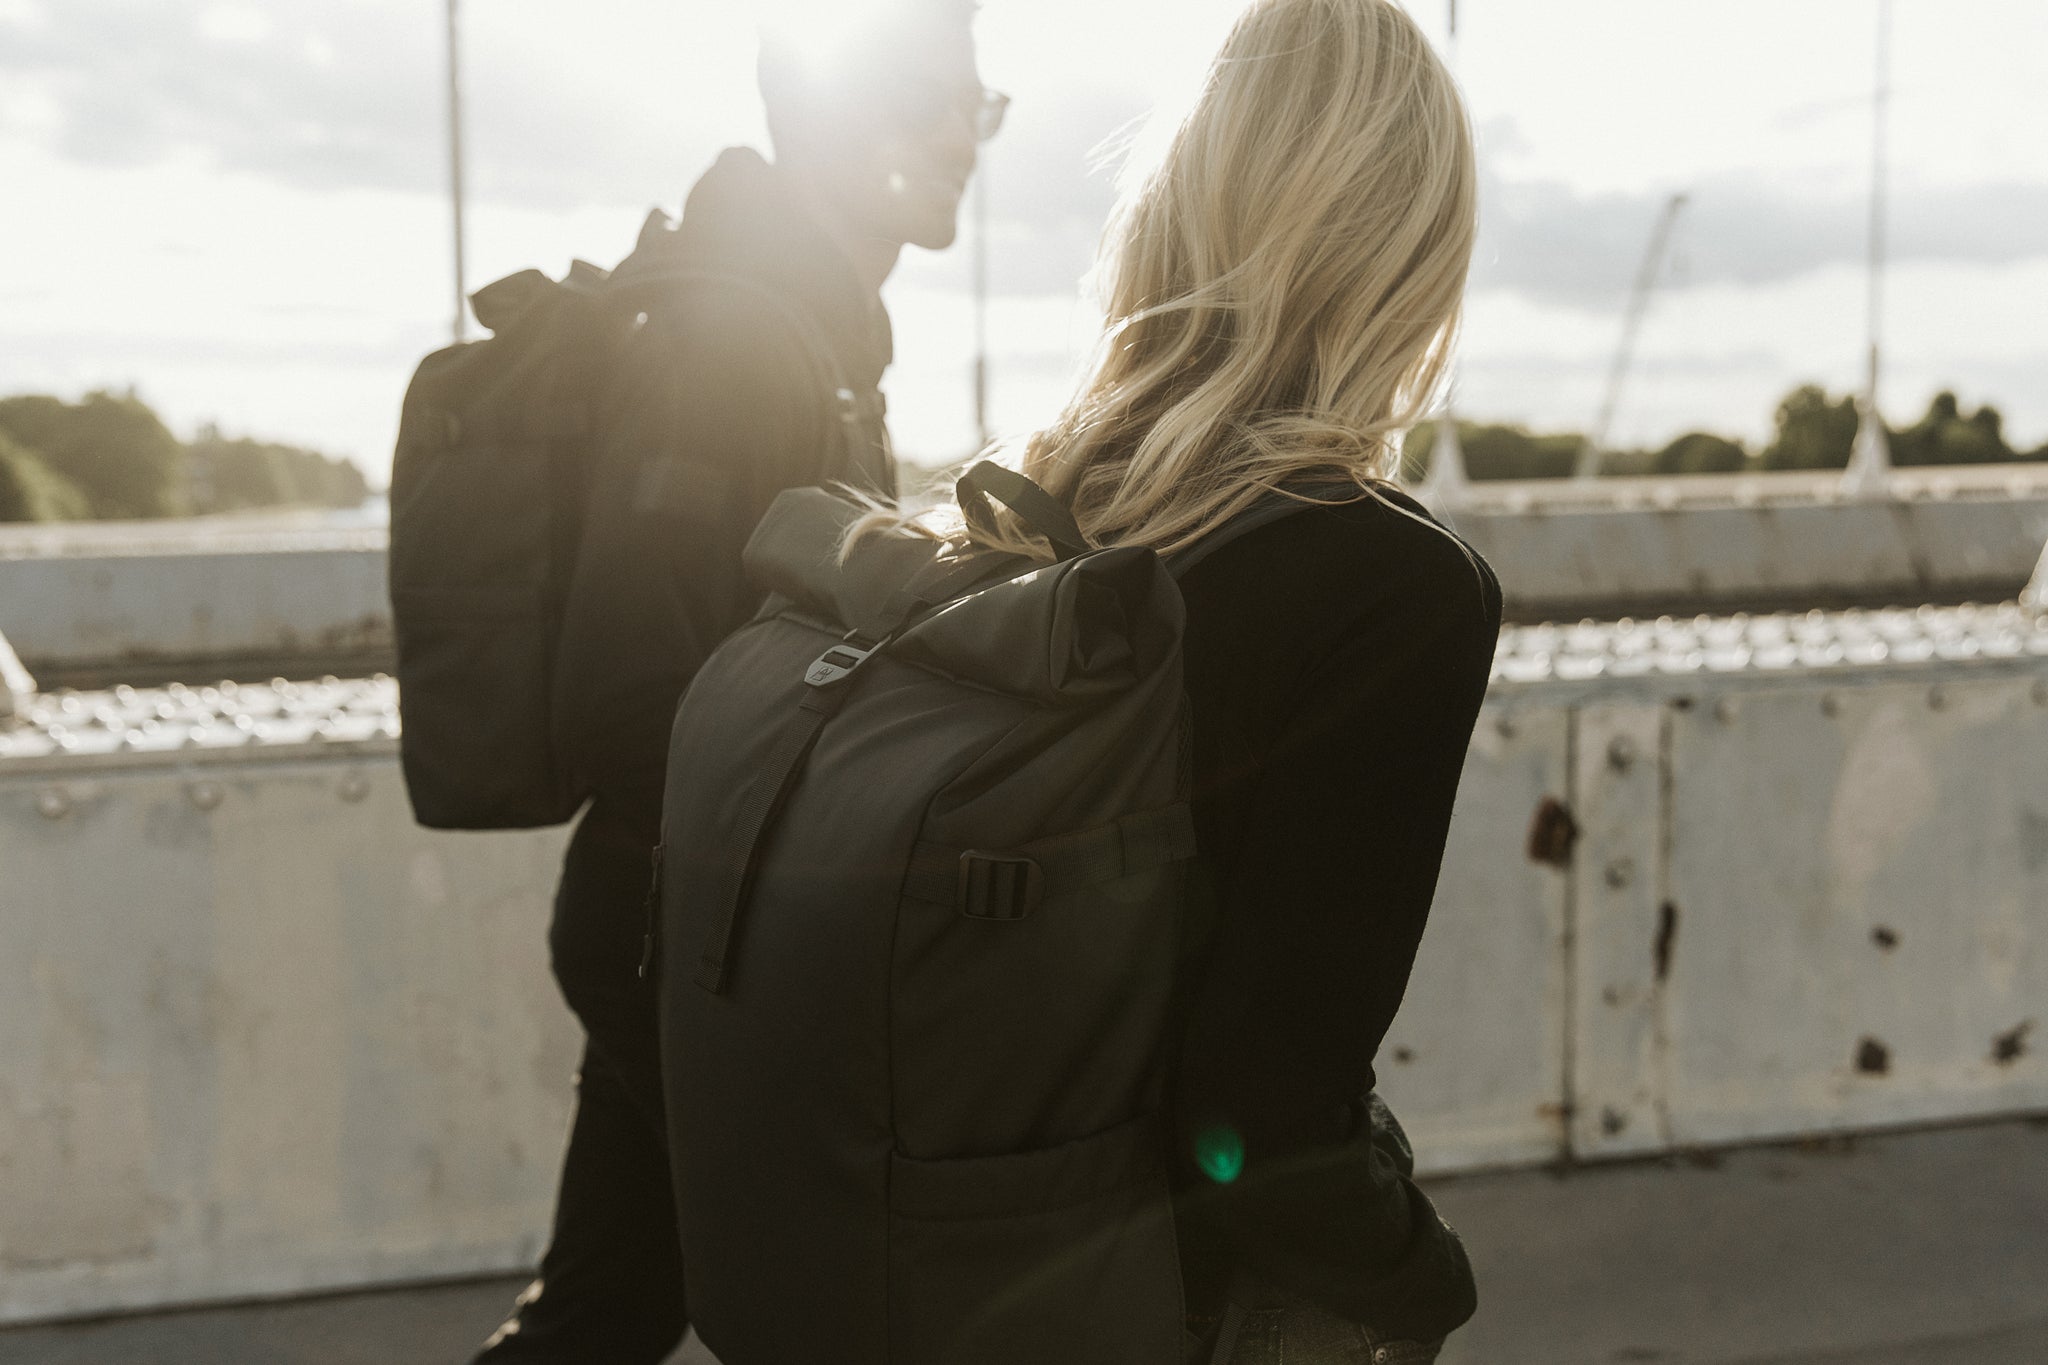 Two people wearing black backpacks